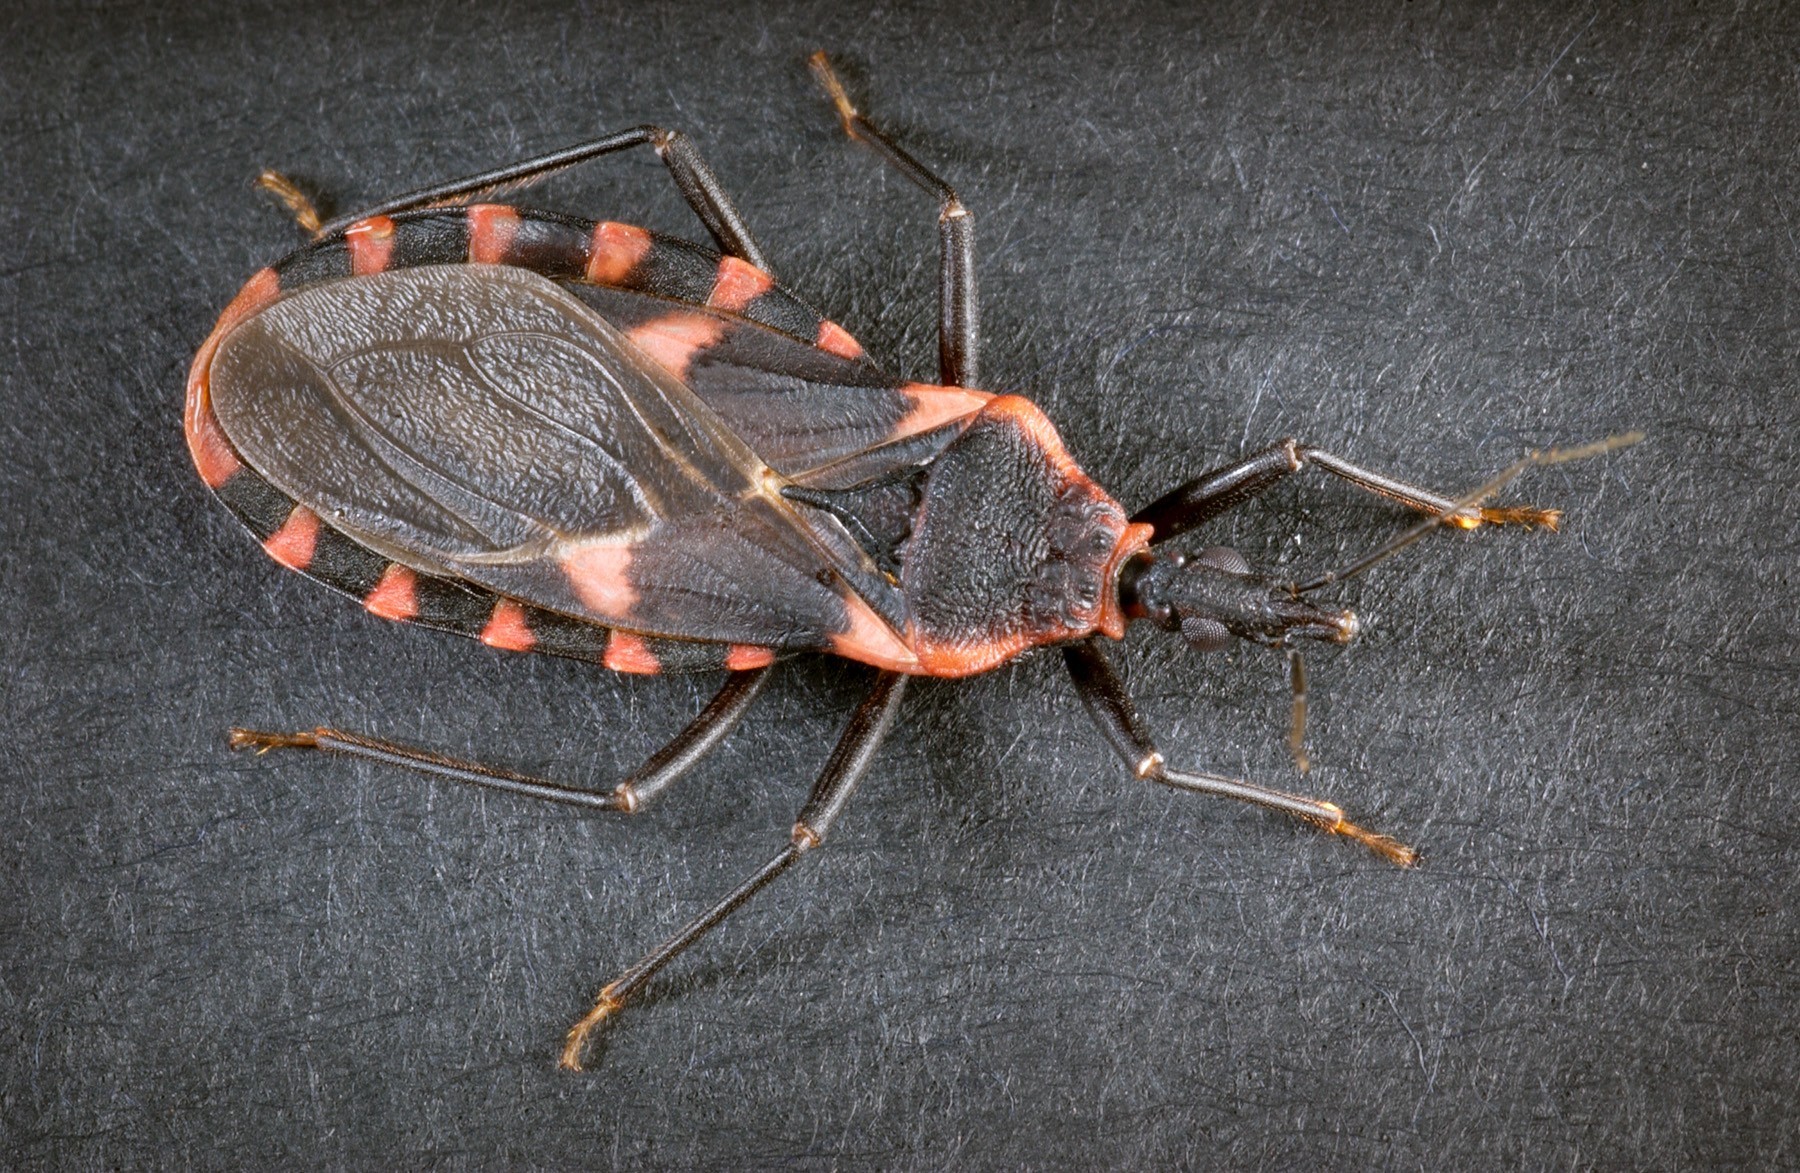 Morador de Águas Claras encontra inseto transmissor da doença de Chagas